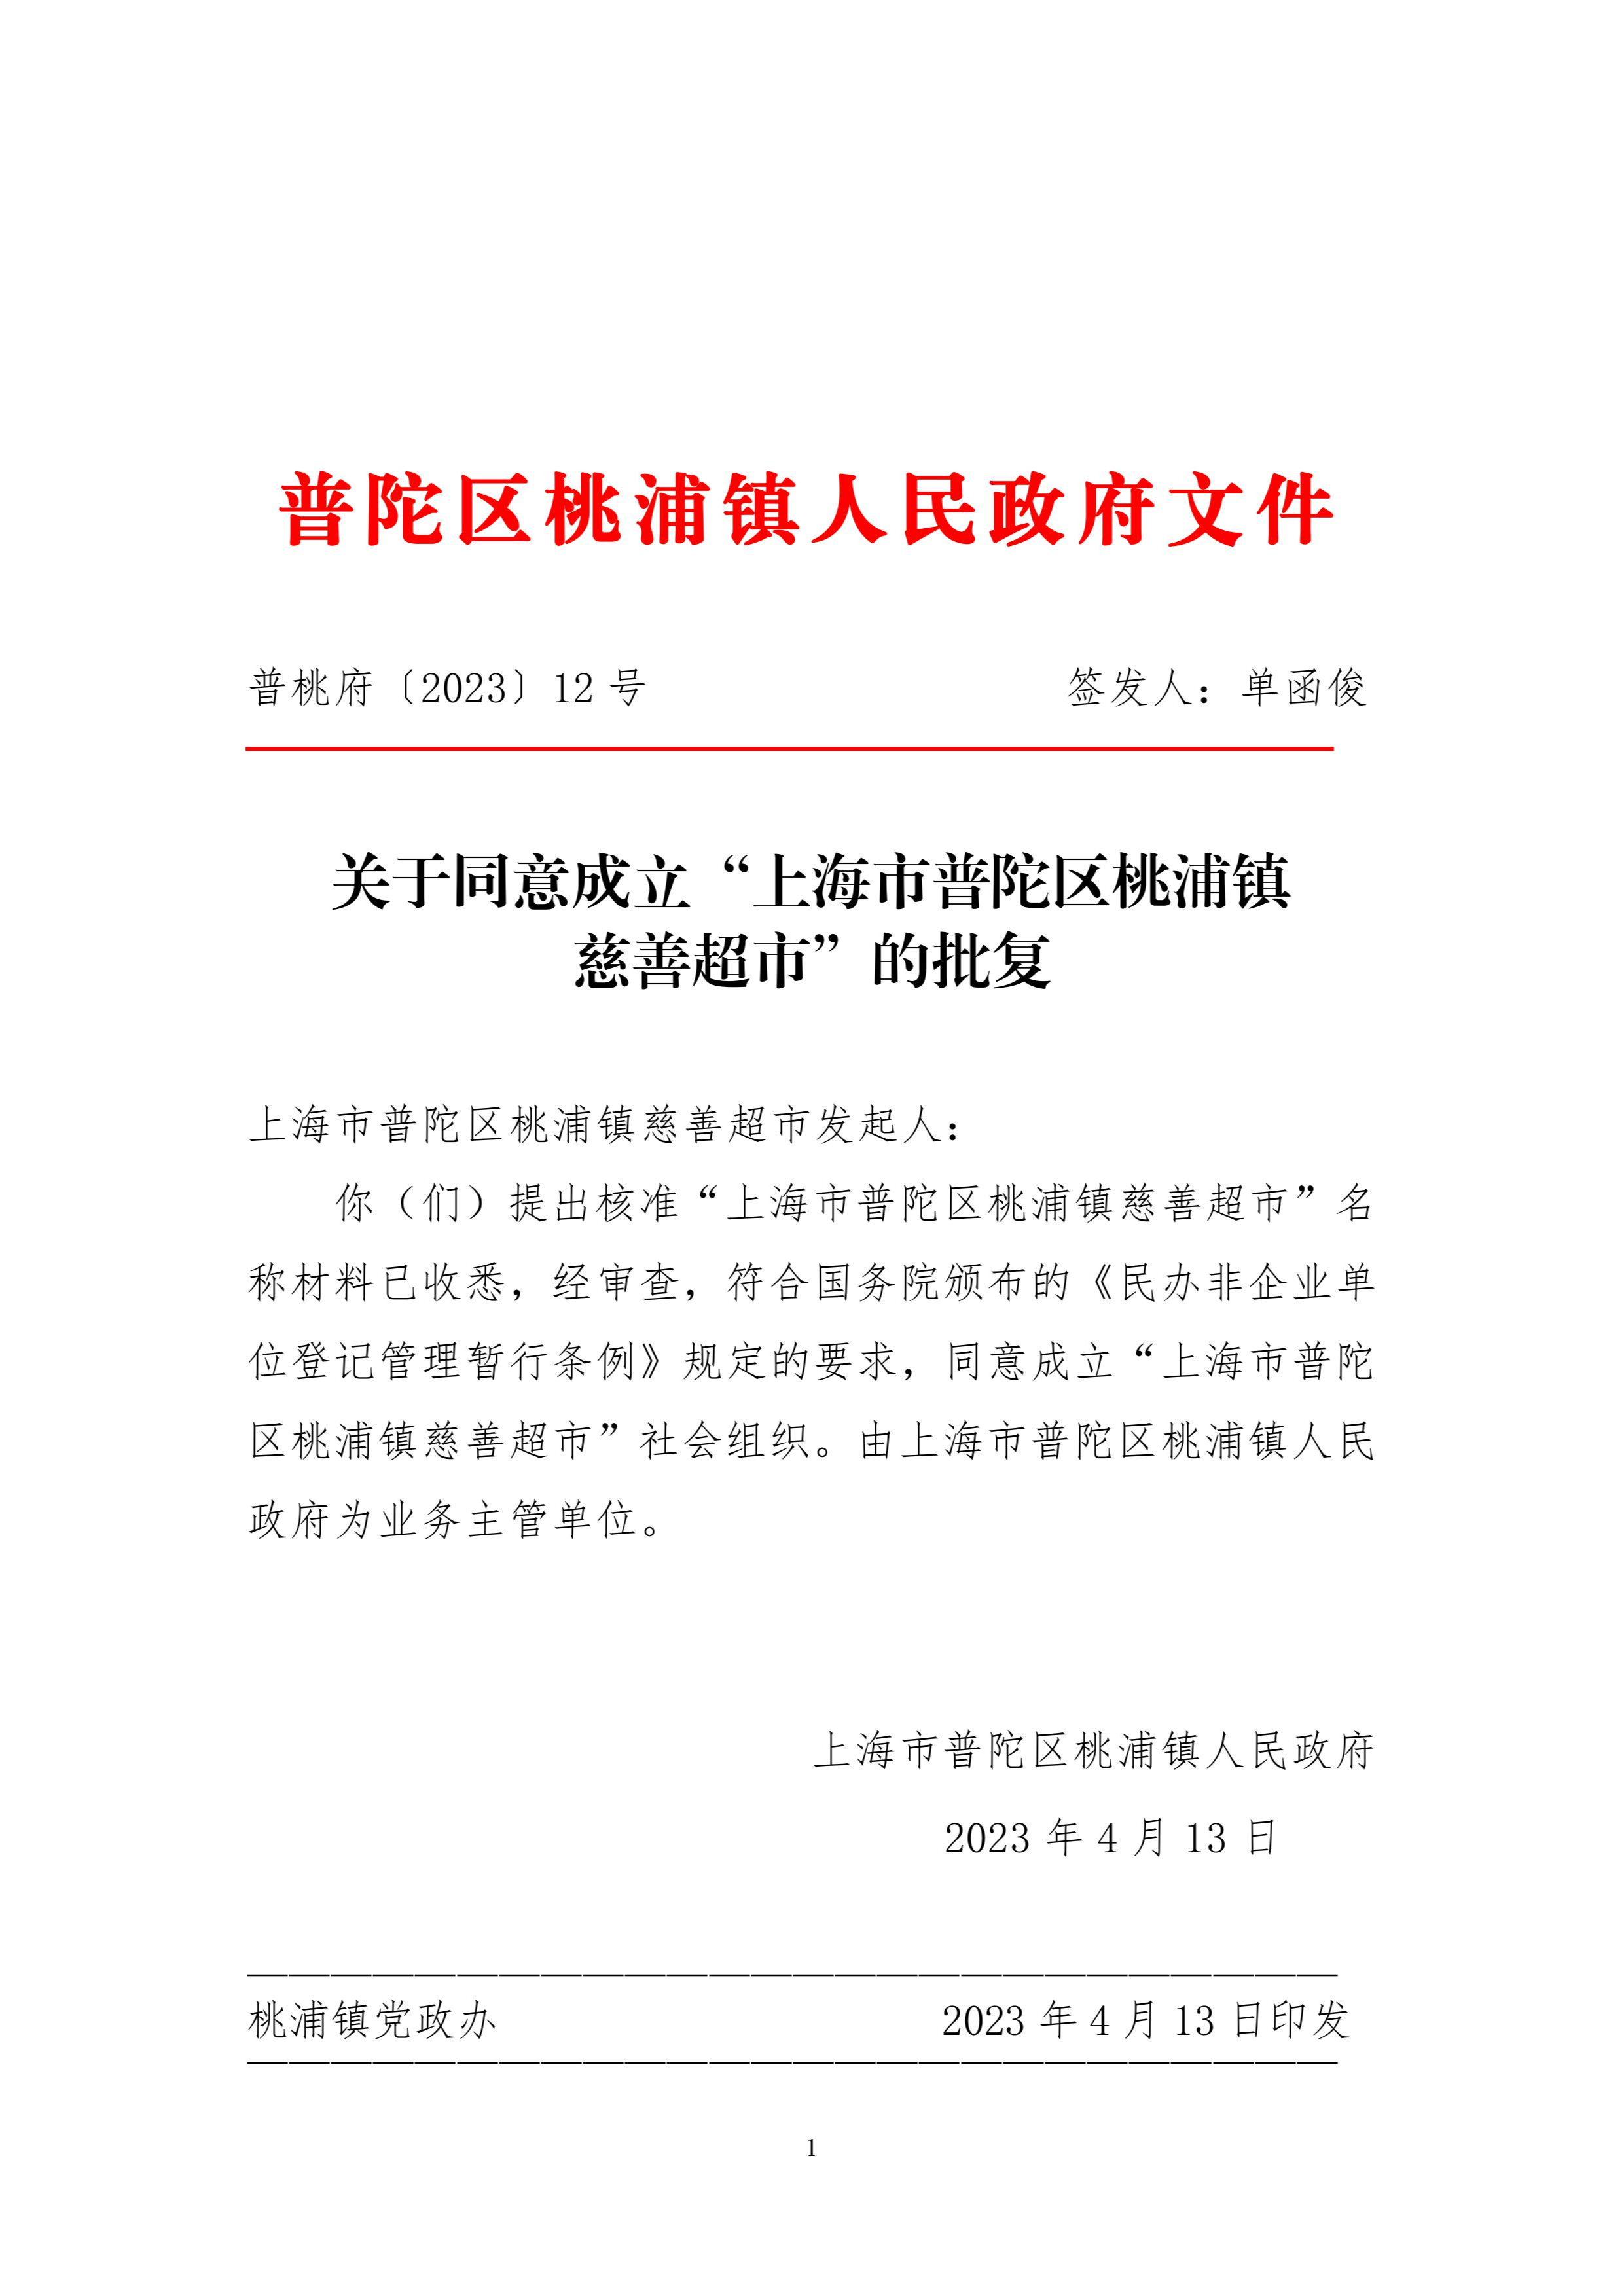 关于同意成立“上海市普陀区桃浦镇慈善超市”的批复